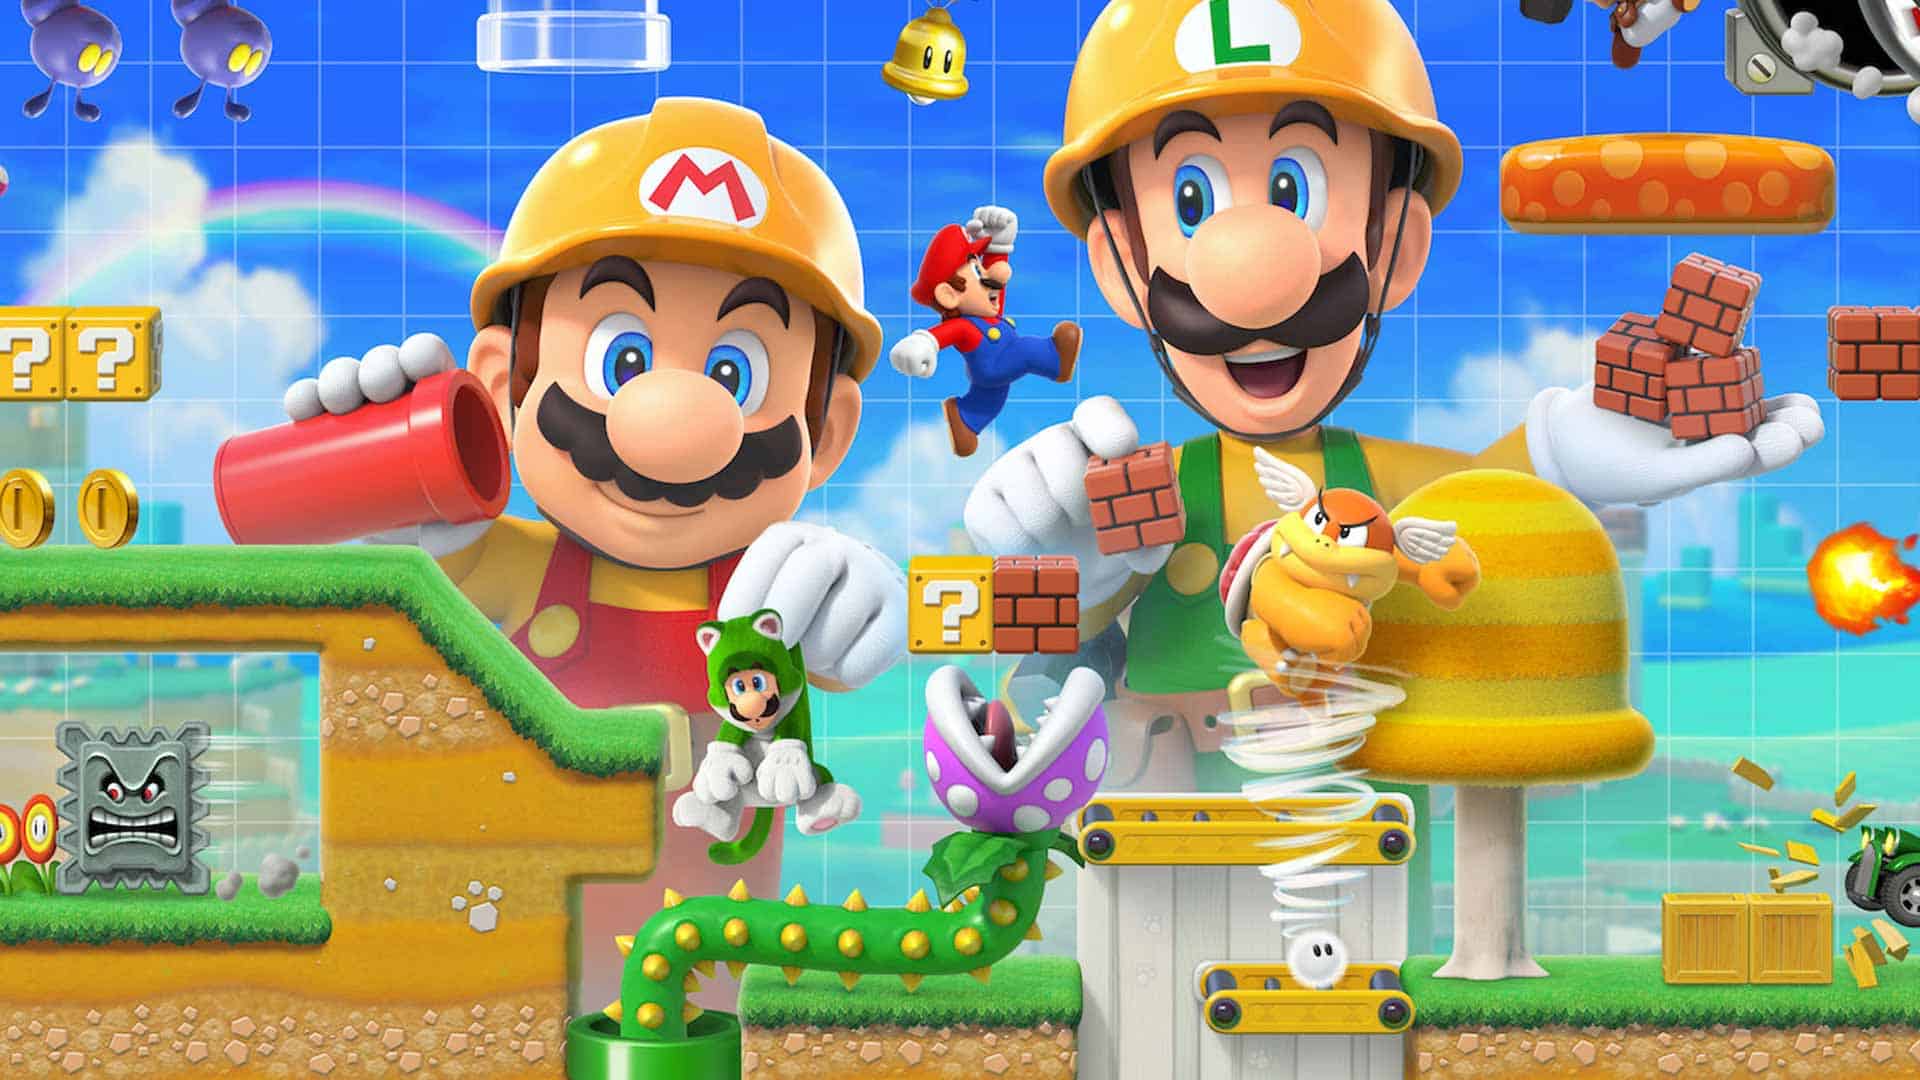 Super Mario Maker 2 Review - Inspiring Creation | CGMagazine